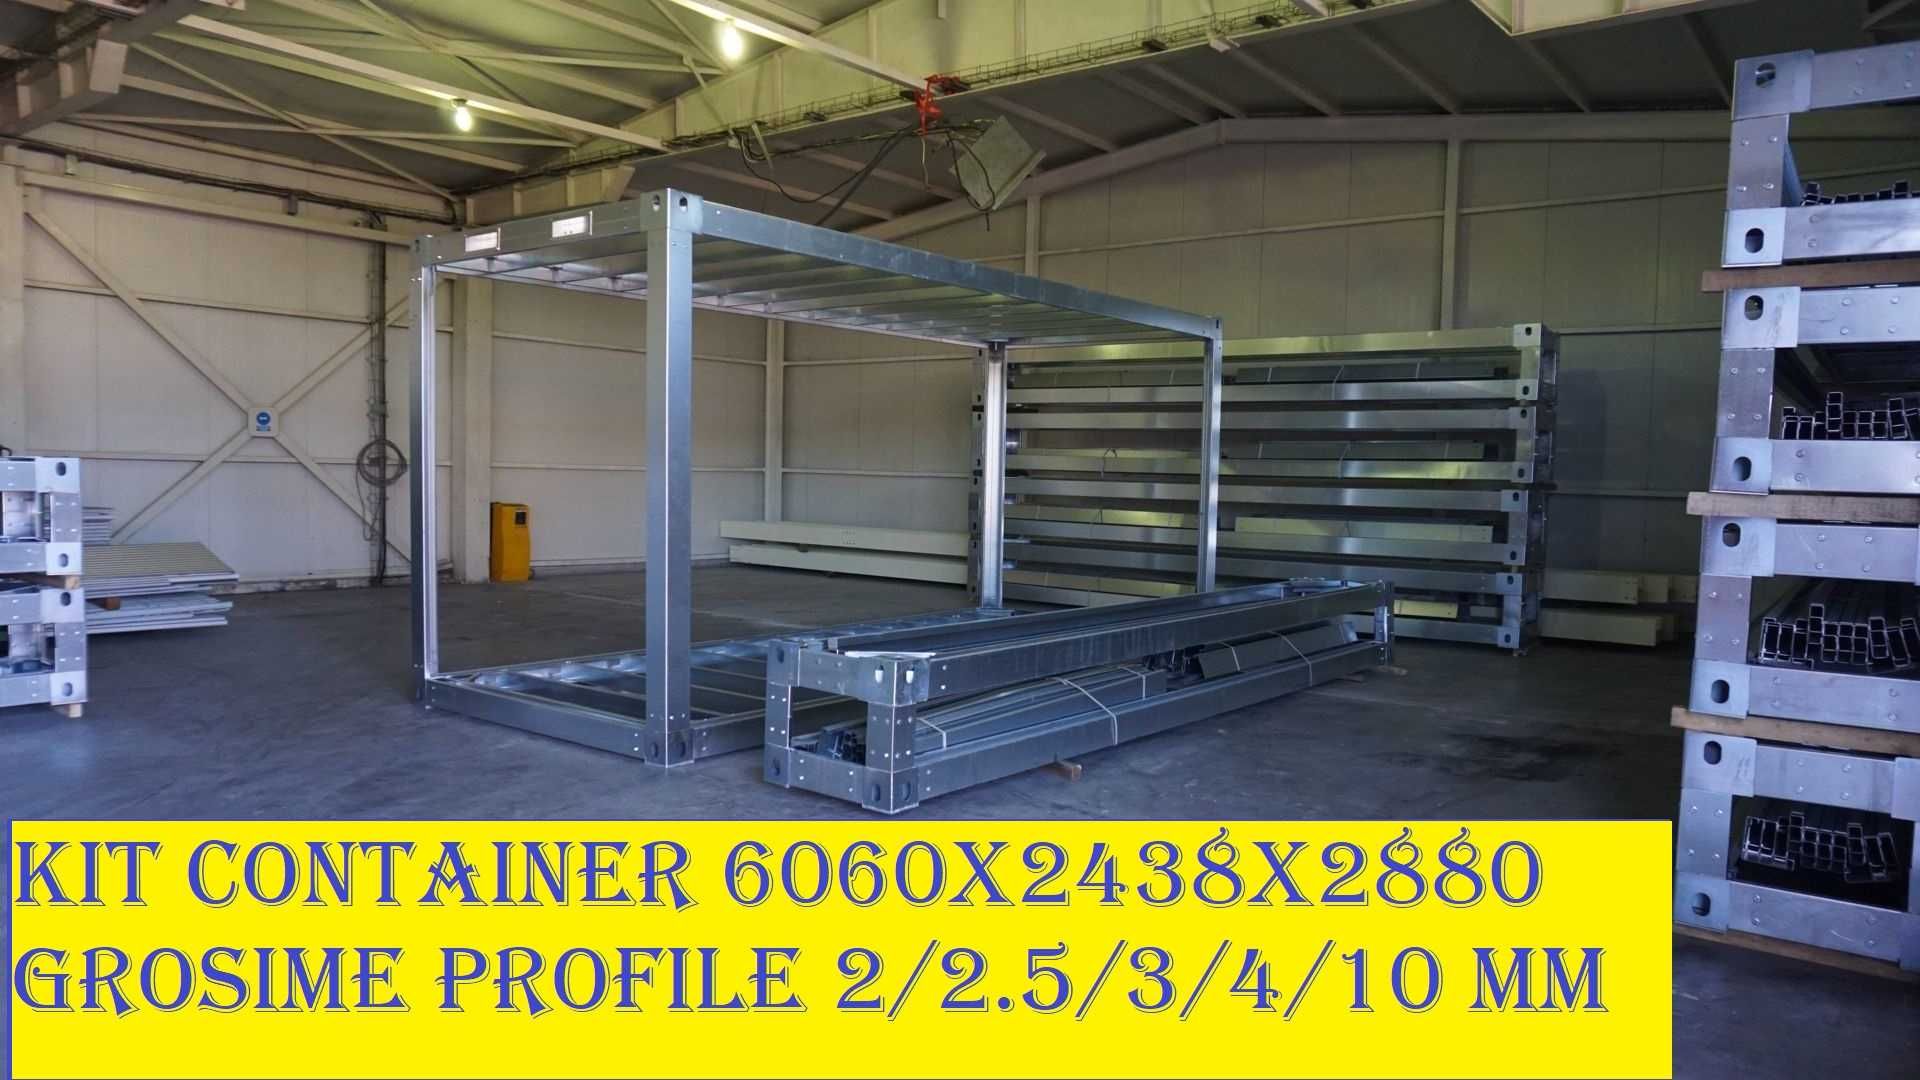 Structura modulara -Stalpi de 3 mm -PRET PRODUCATOR 6060x2435x2880